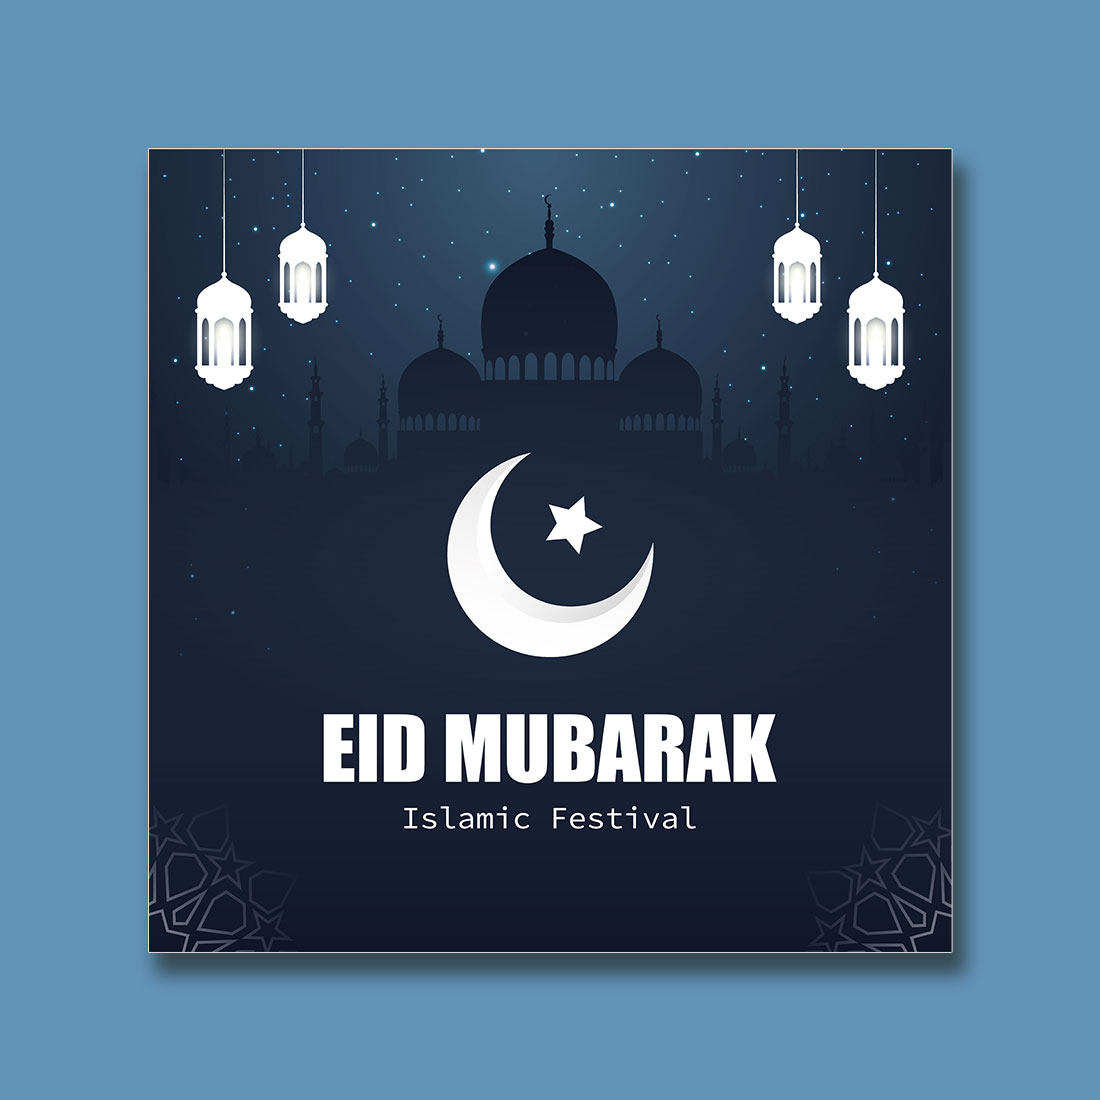 Eid Mubarak Greeting Card preview image.